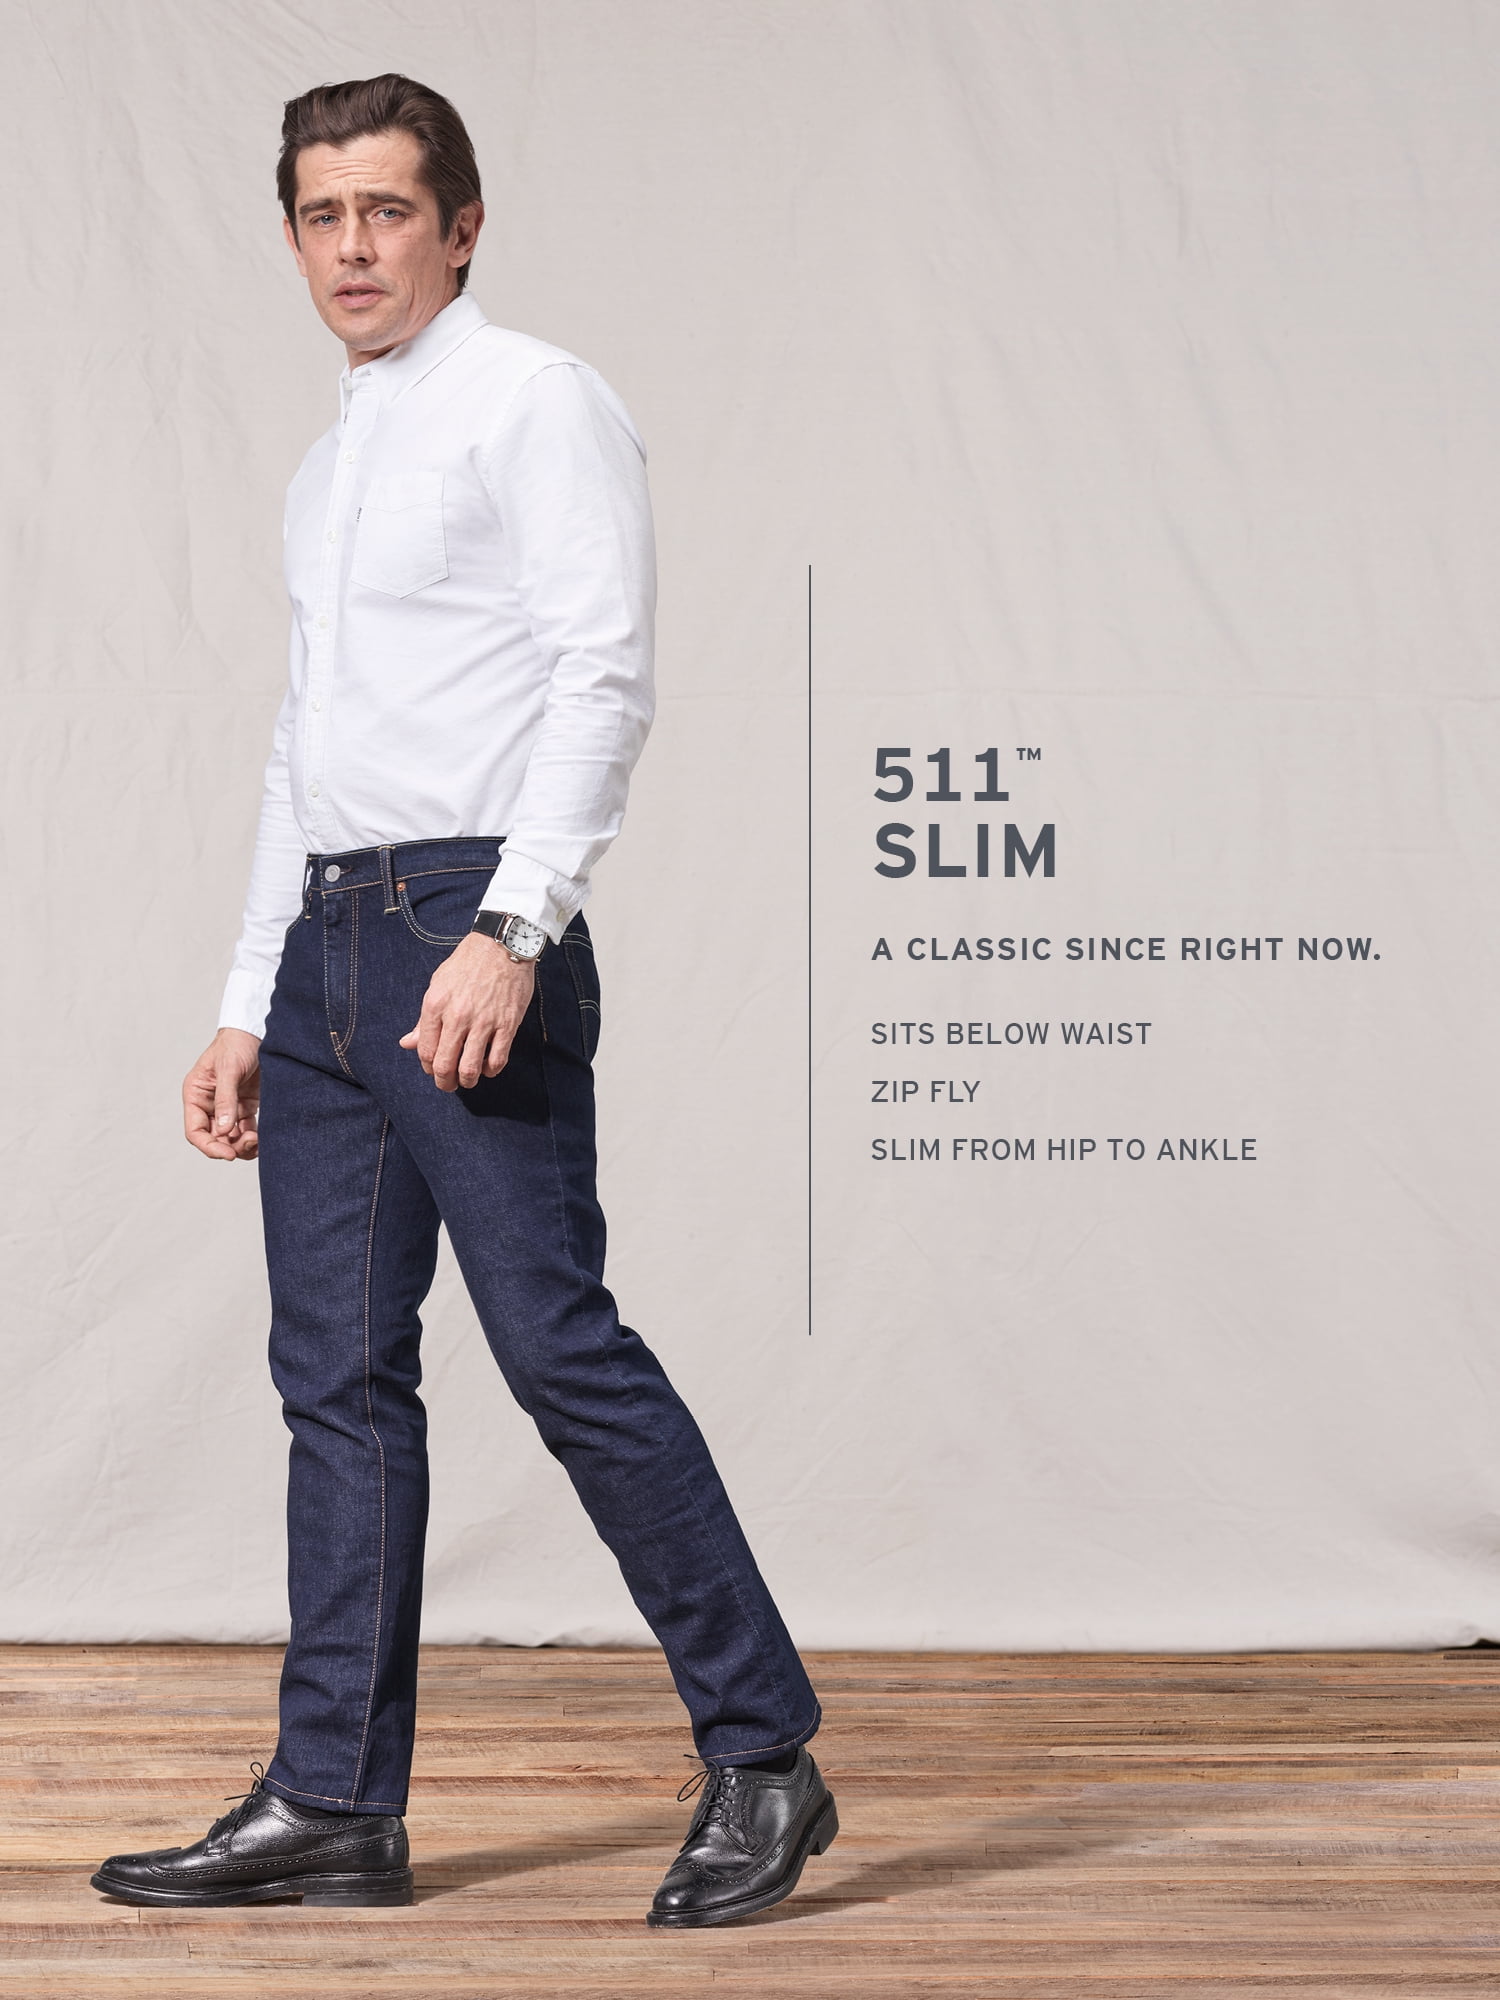 Wetenschap Meetbaar assistent Levi's Men's 511 Slim Fit Jeans - Walmart.com